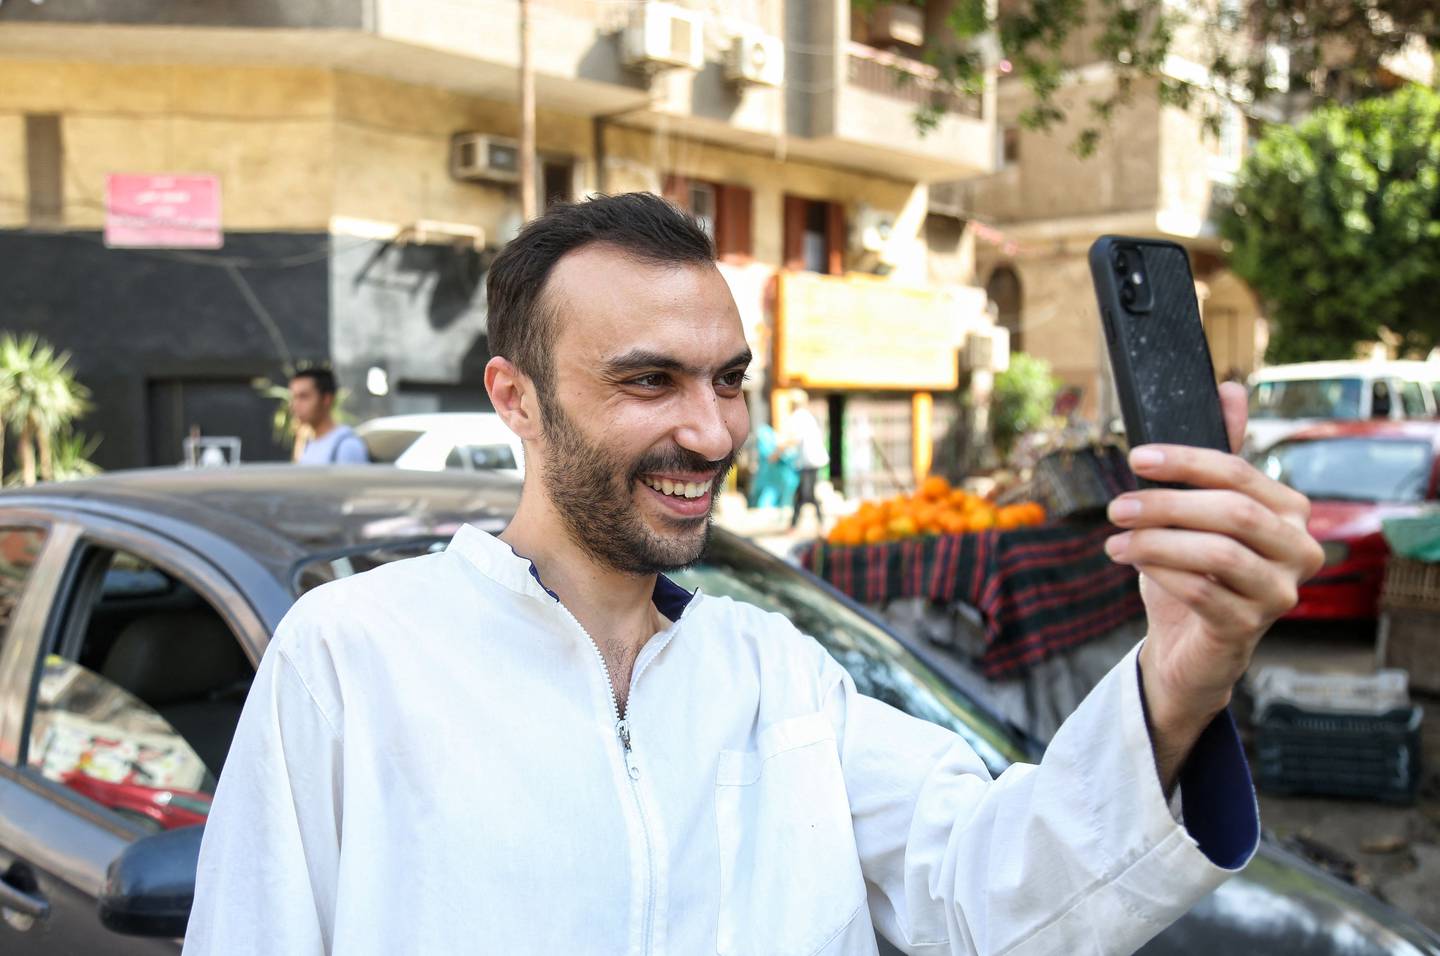 Le détenu en détention provisoire Walid Shawky après sa libération de prison en avril dernier dans le cadre d'un examen des cas de prisonniers politiques en Égypte.  AFP